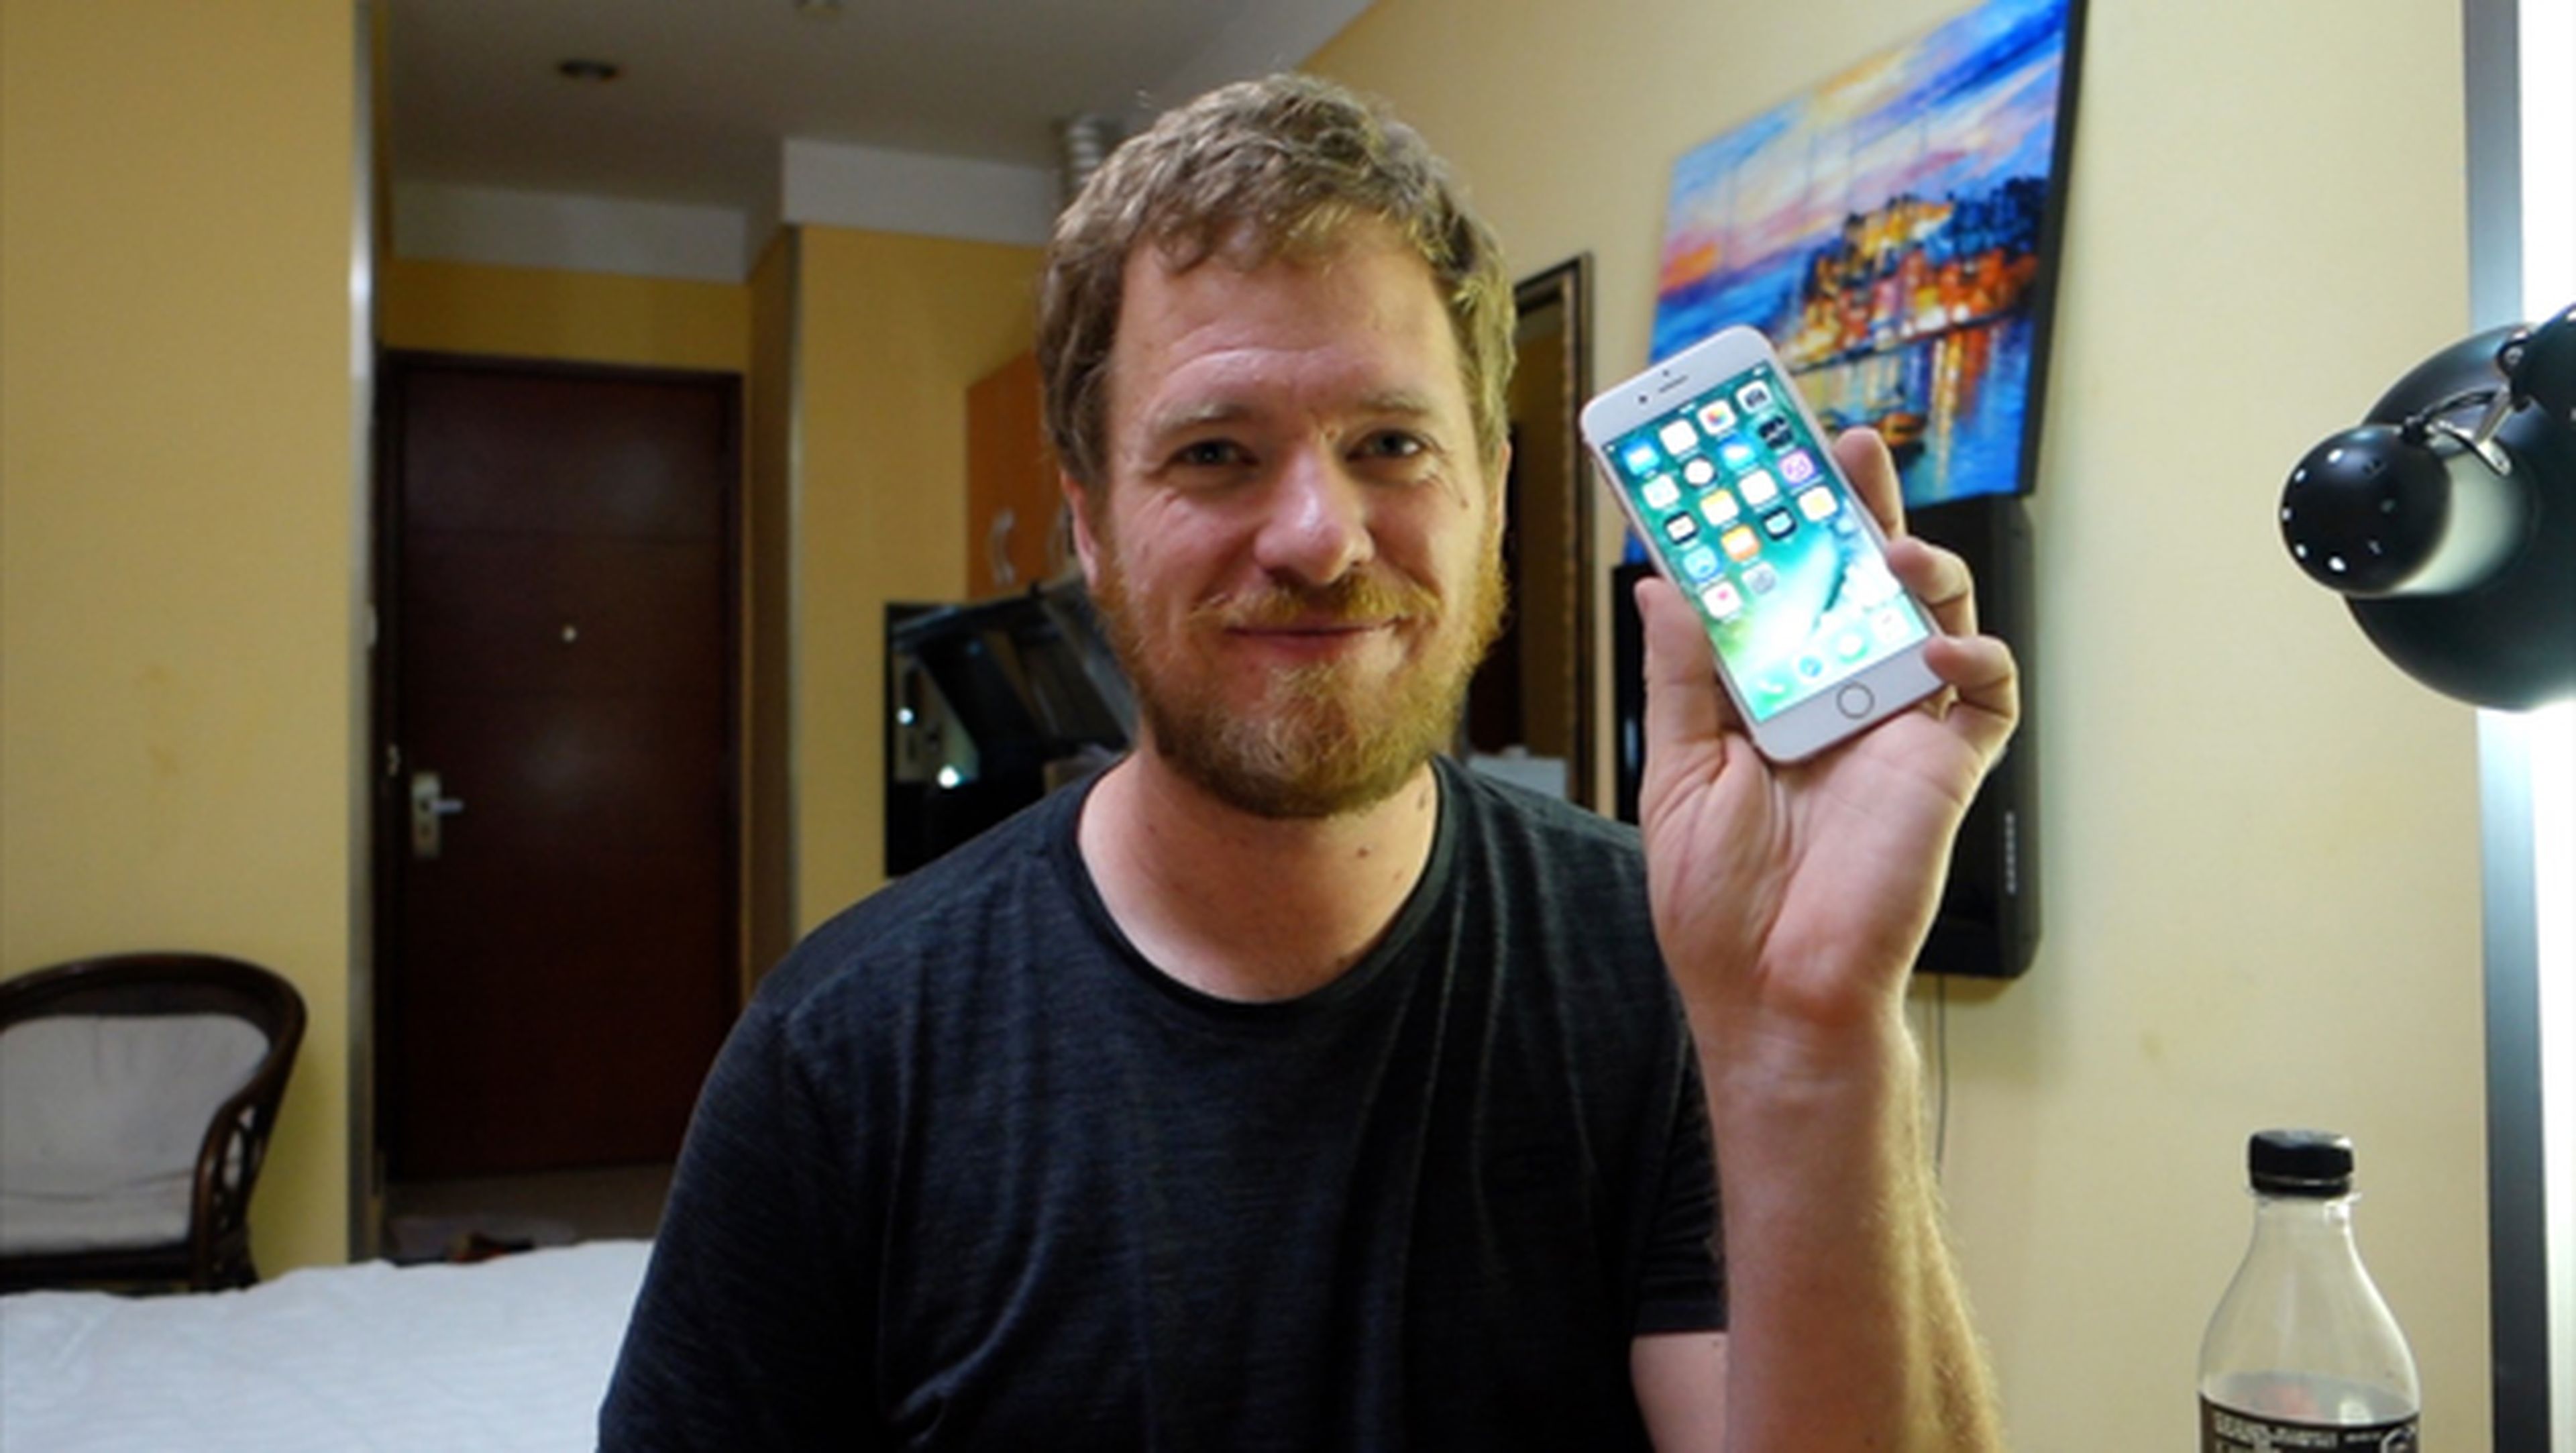 Construye su propio iPhone 6s por piezas